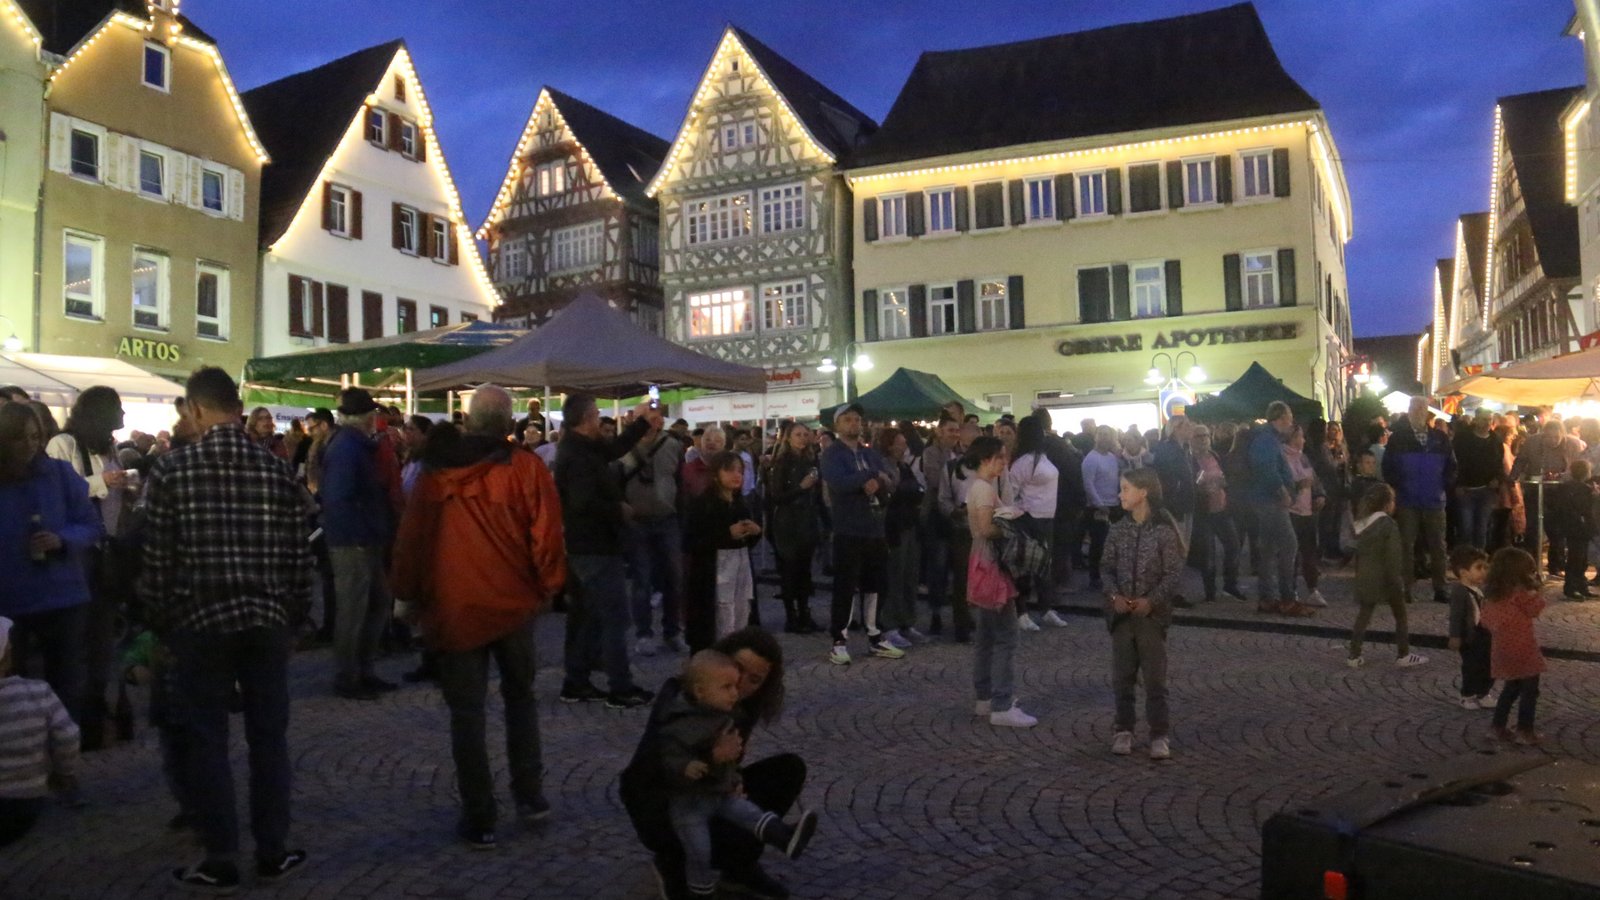 Der Marktplatz zeigte sich Samstagabend mit Festbeleuchtung und zahlreichen Festbesuchern. Fotos: Rücker